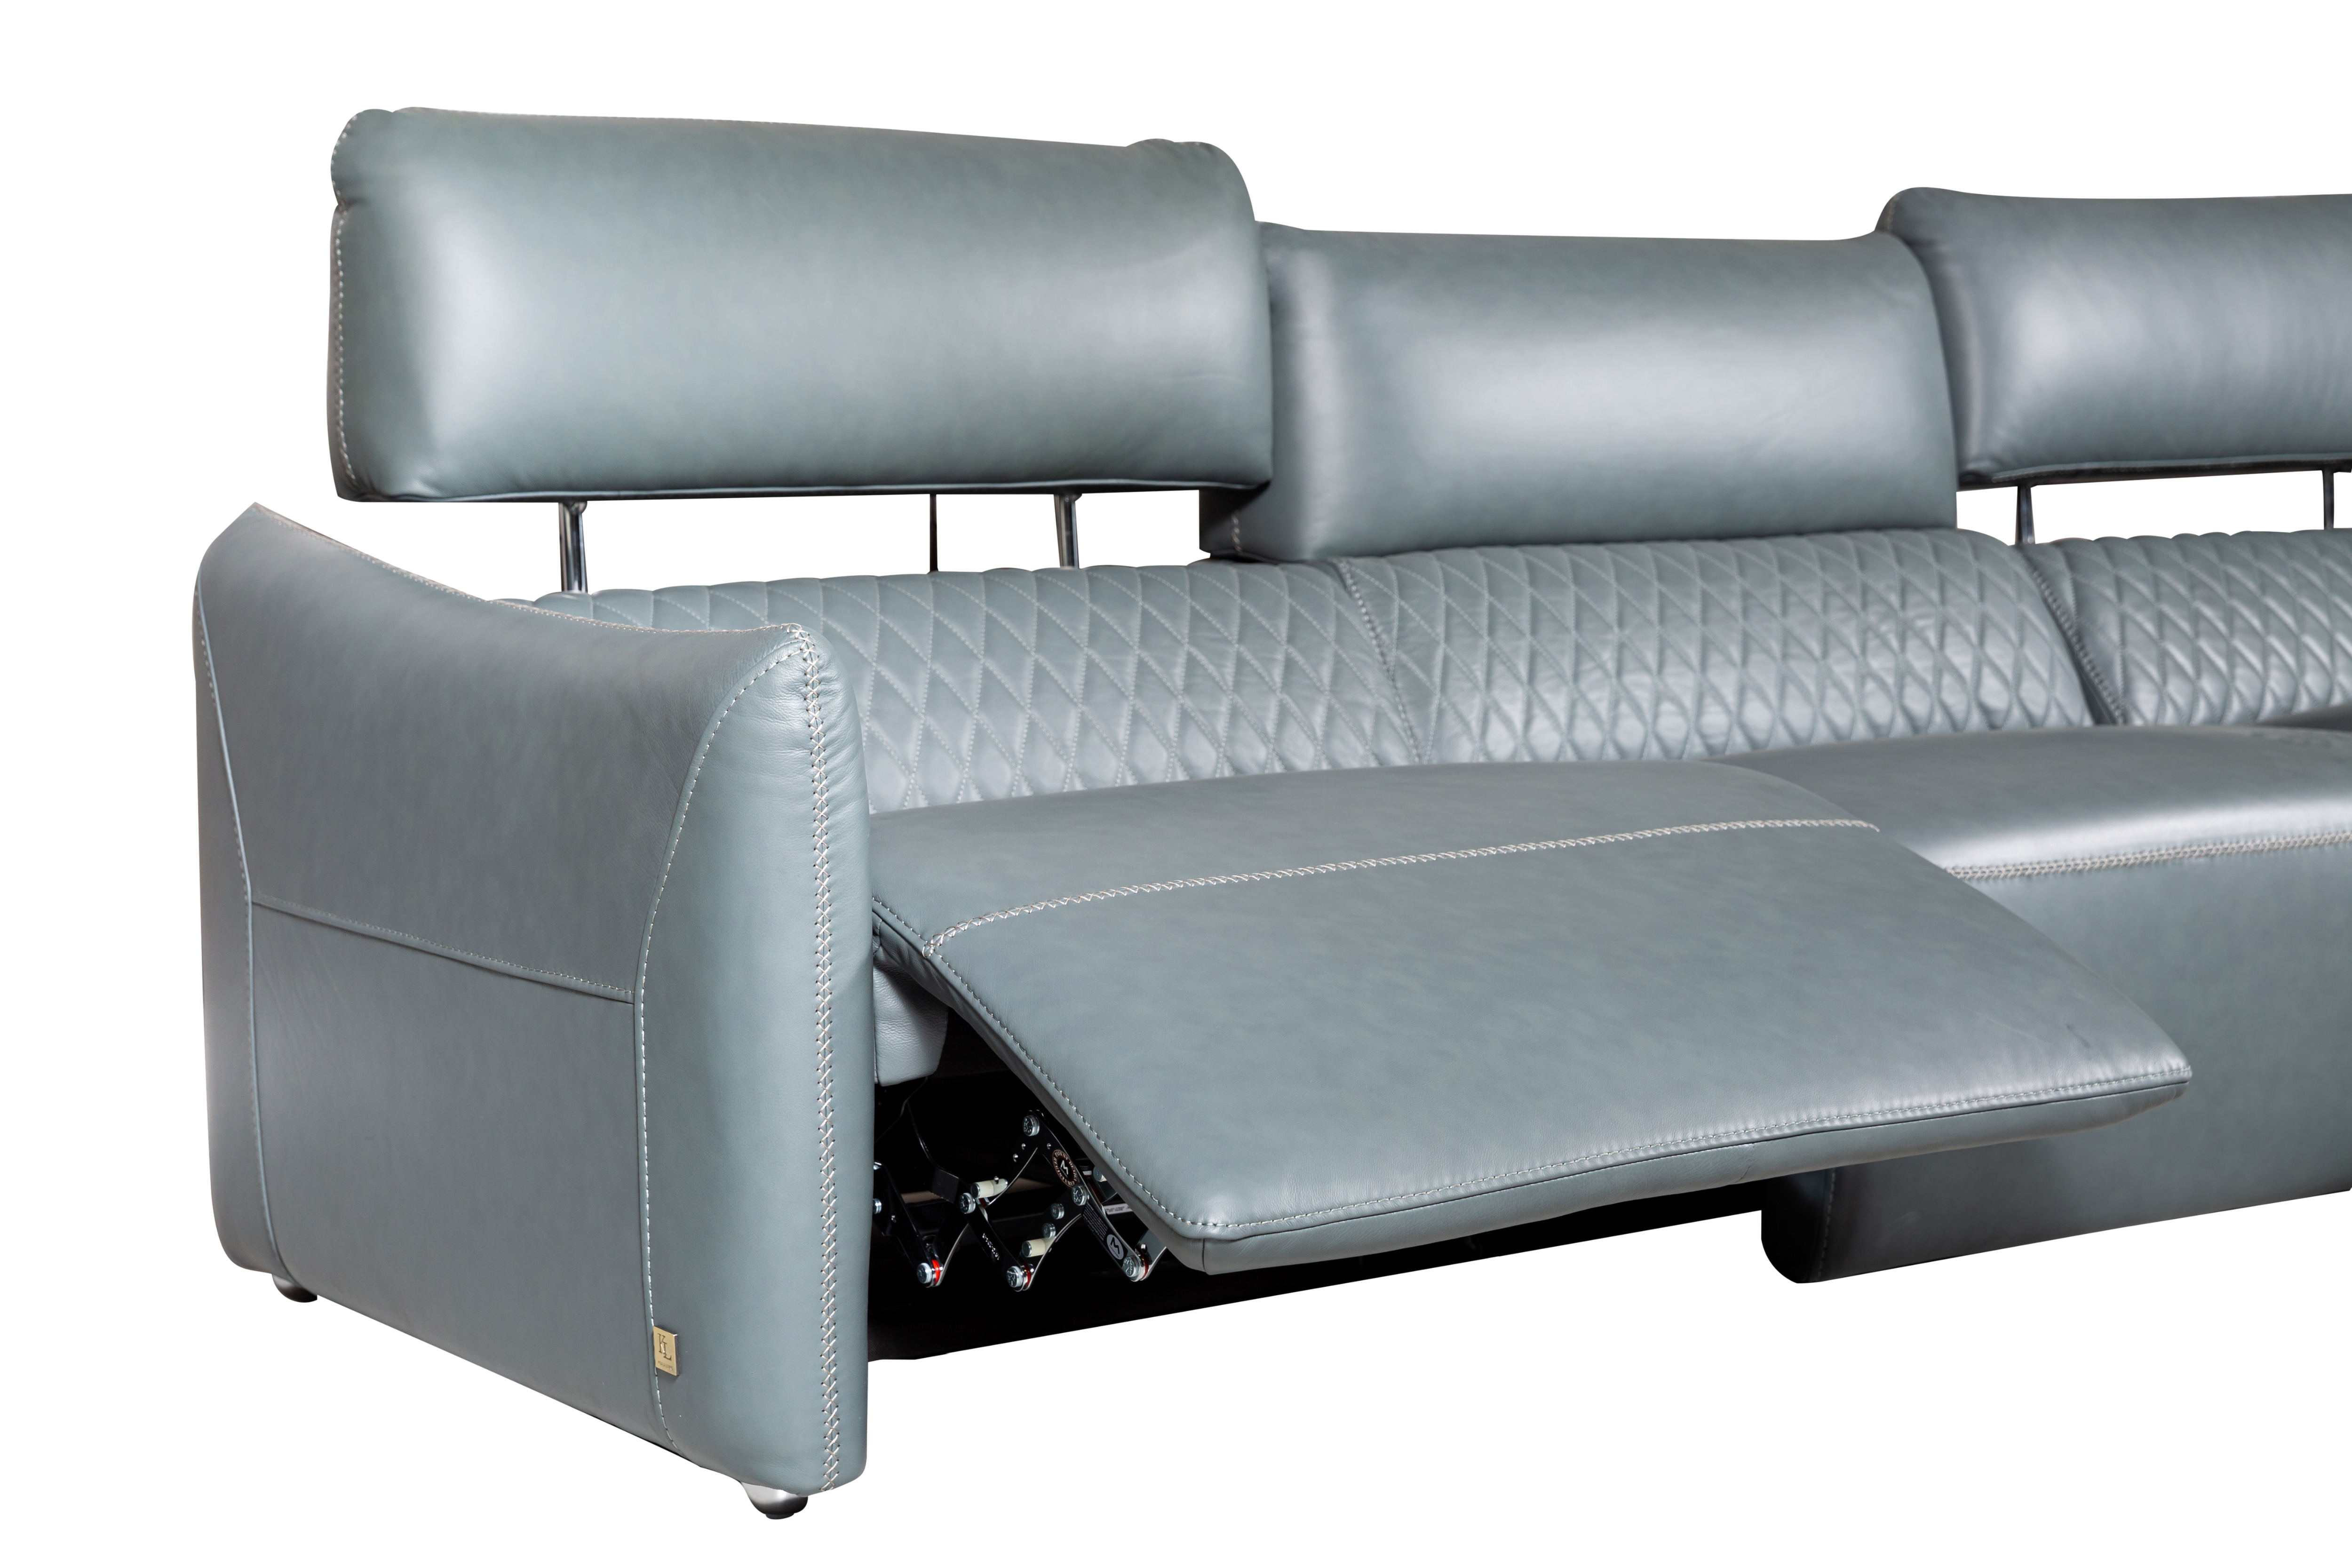 Salvatore 3-Seater Recliner Sofa